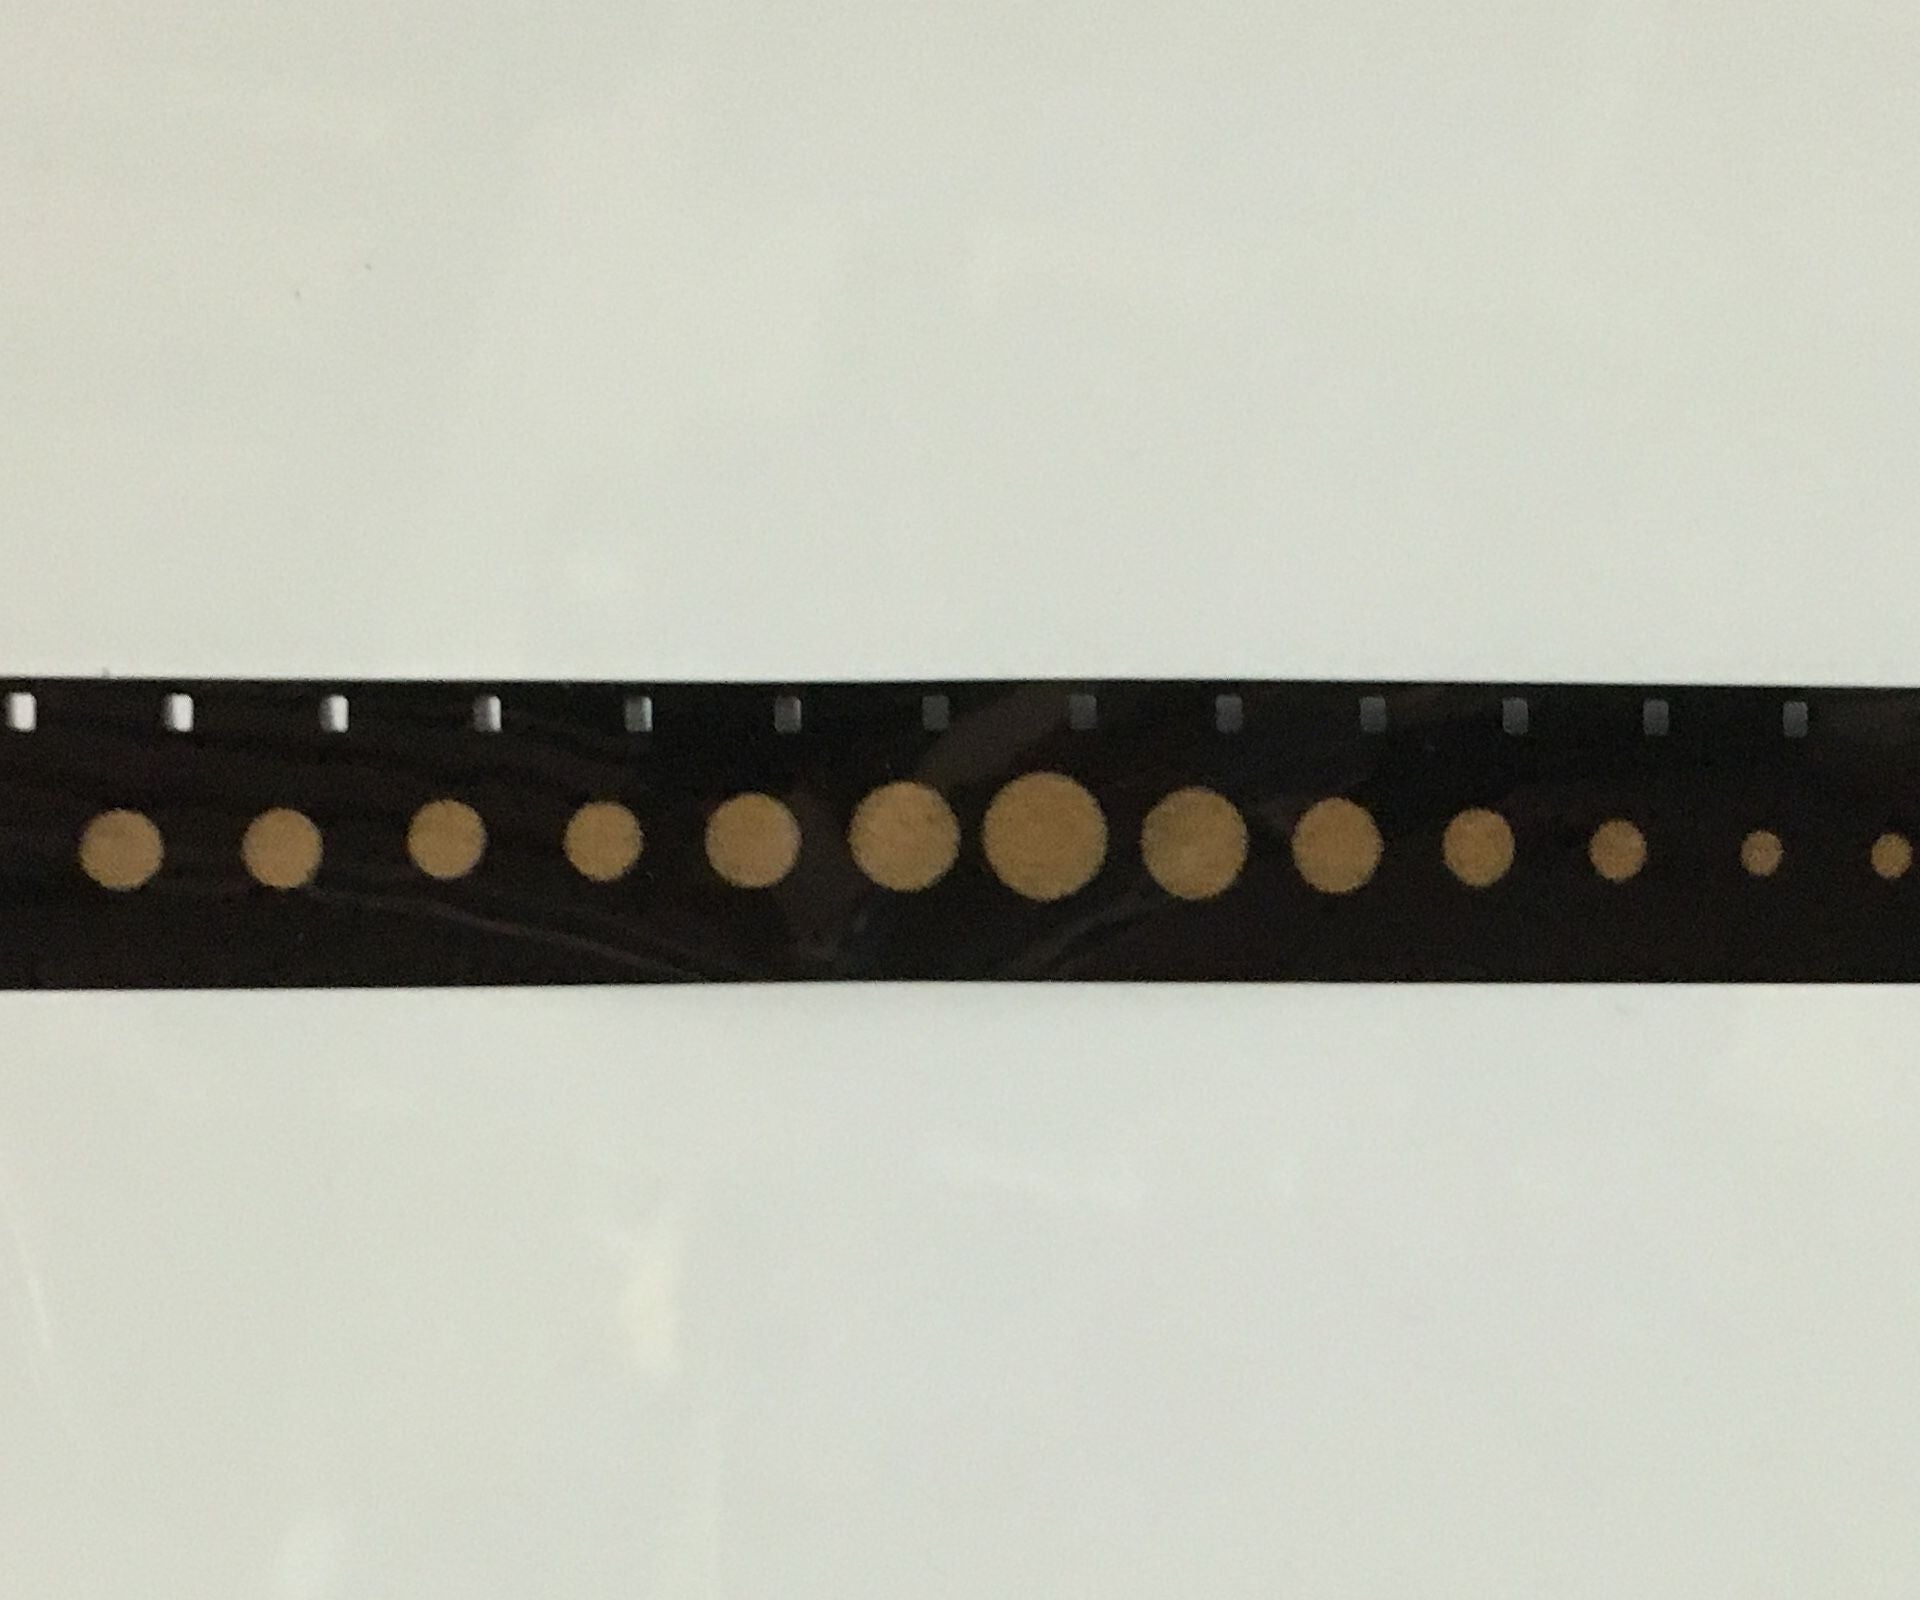 Laser-Etched 16mm Film Strip